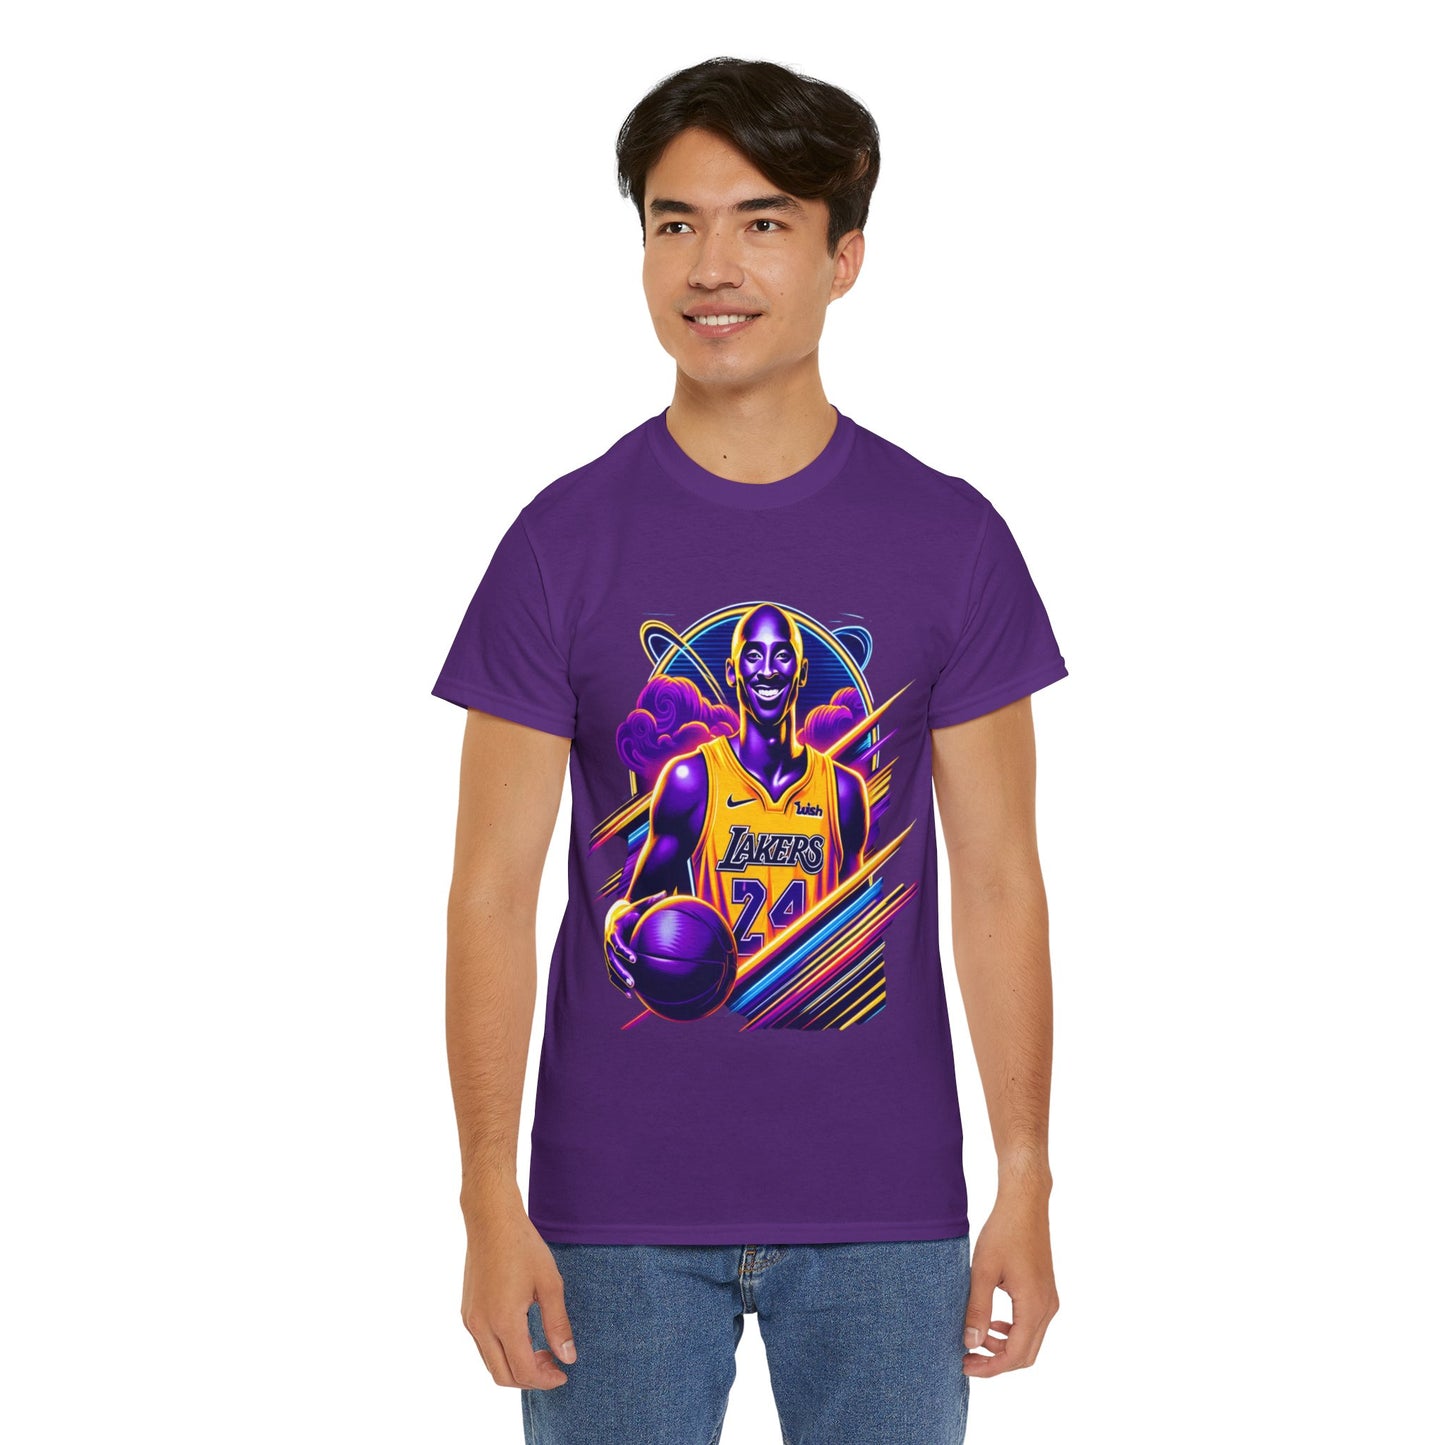 Y.M.L.Y. "Kobe Bryant Black Mamba" T-Shirt Los Angeles Lakers NBA Shirt